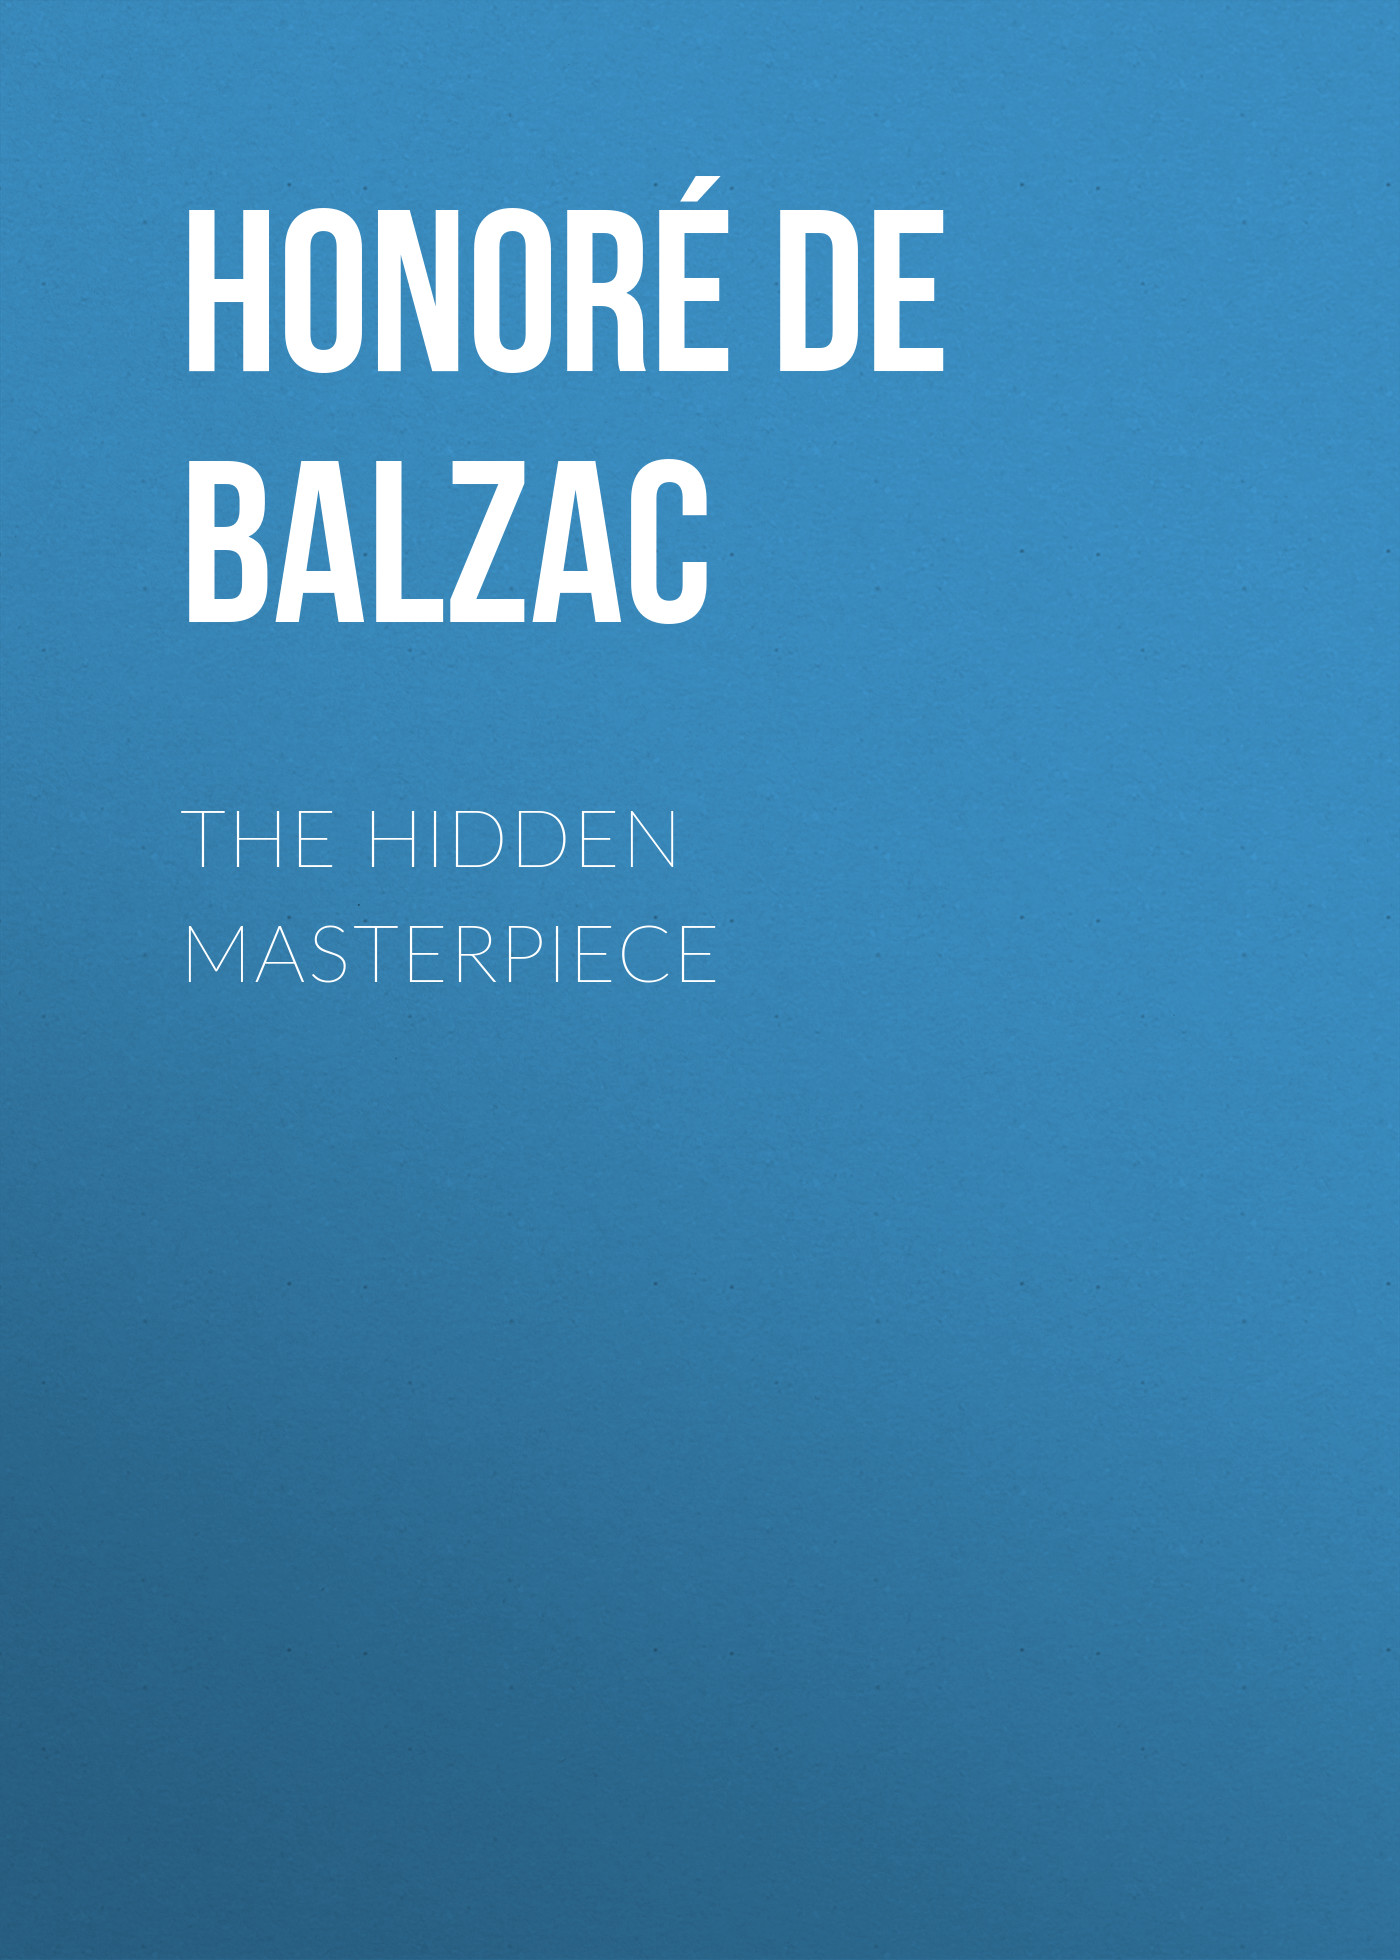 Книга The Hidden Masterpiece из серии , созданная Honoré Balzac, может относится к жанру Литература 19 века, Зарубежная старинная литература, Зарубежная классика. Стоимость электронной книги The Hidden Masterpiece с идентификатором 25020379 составляет 0 руб.